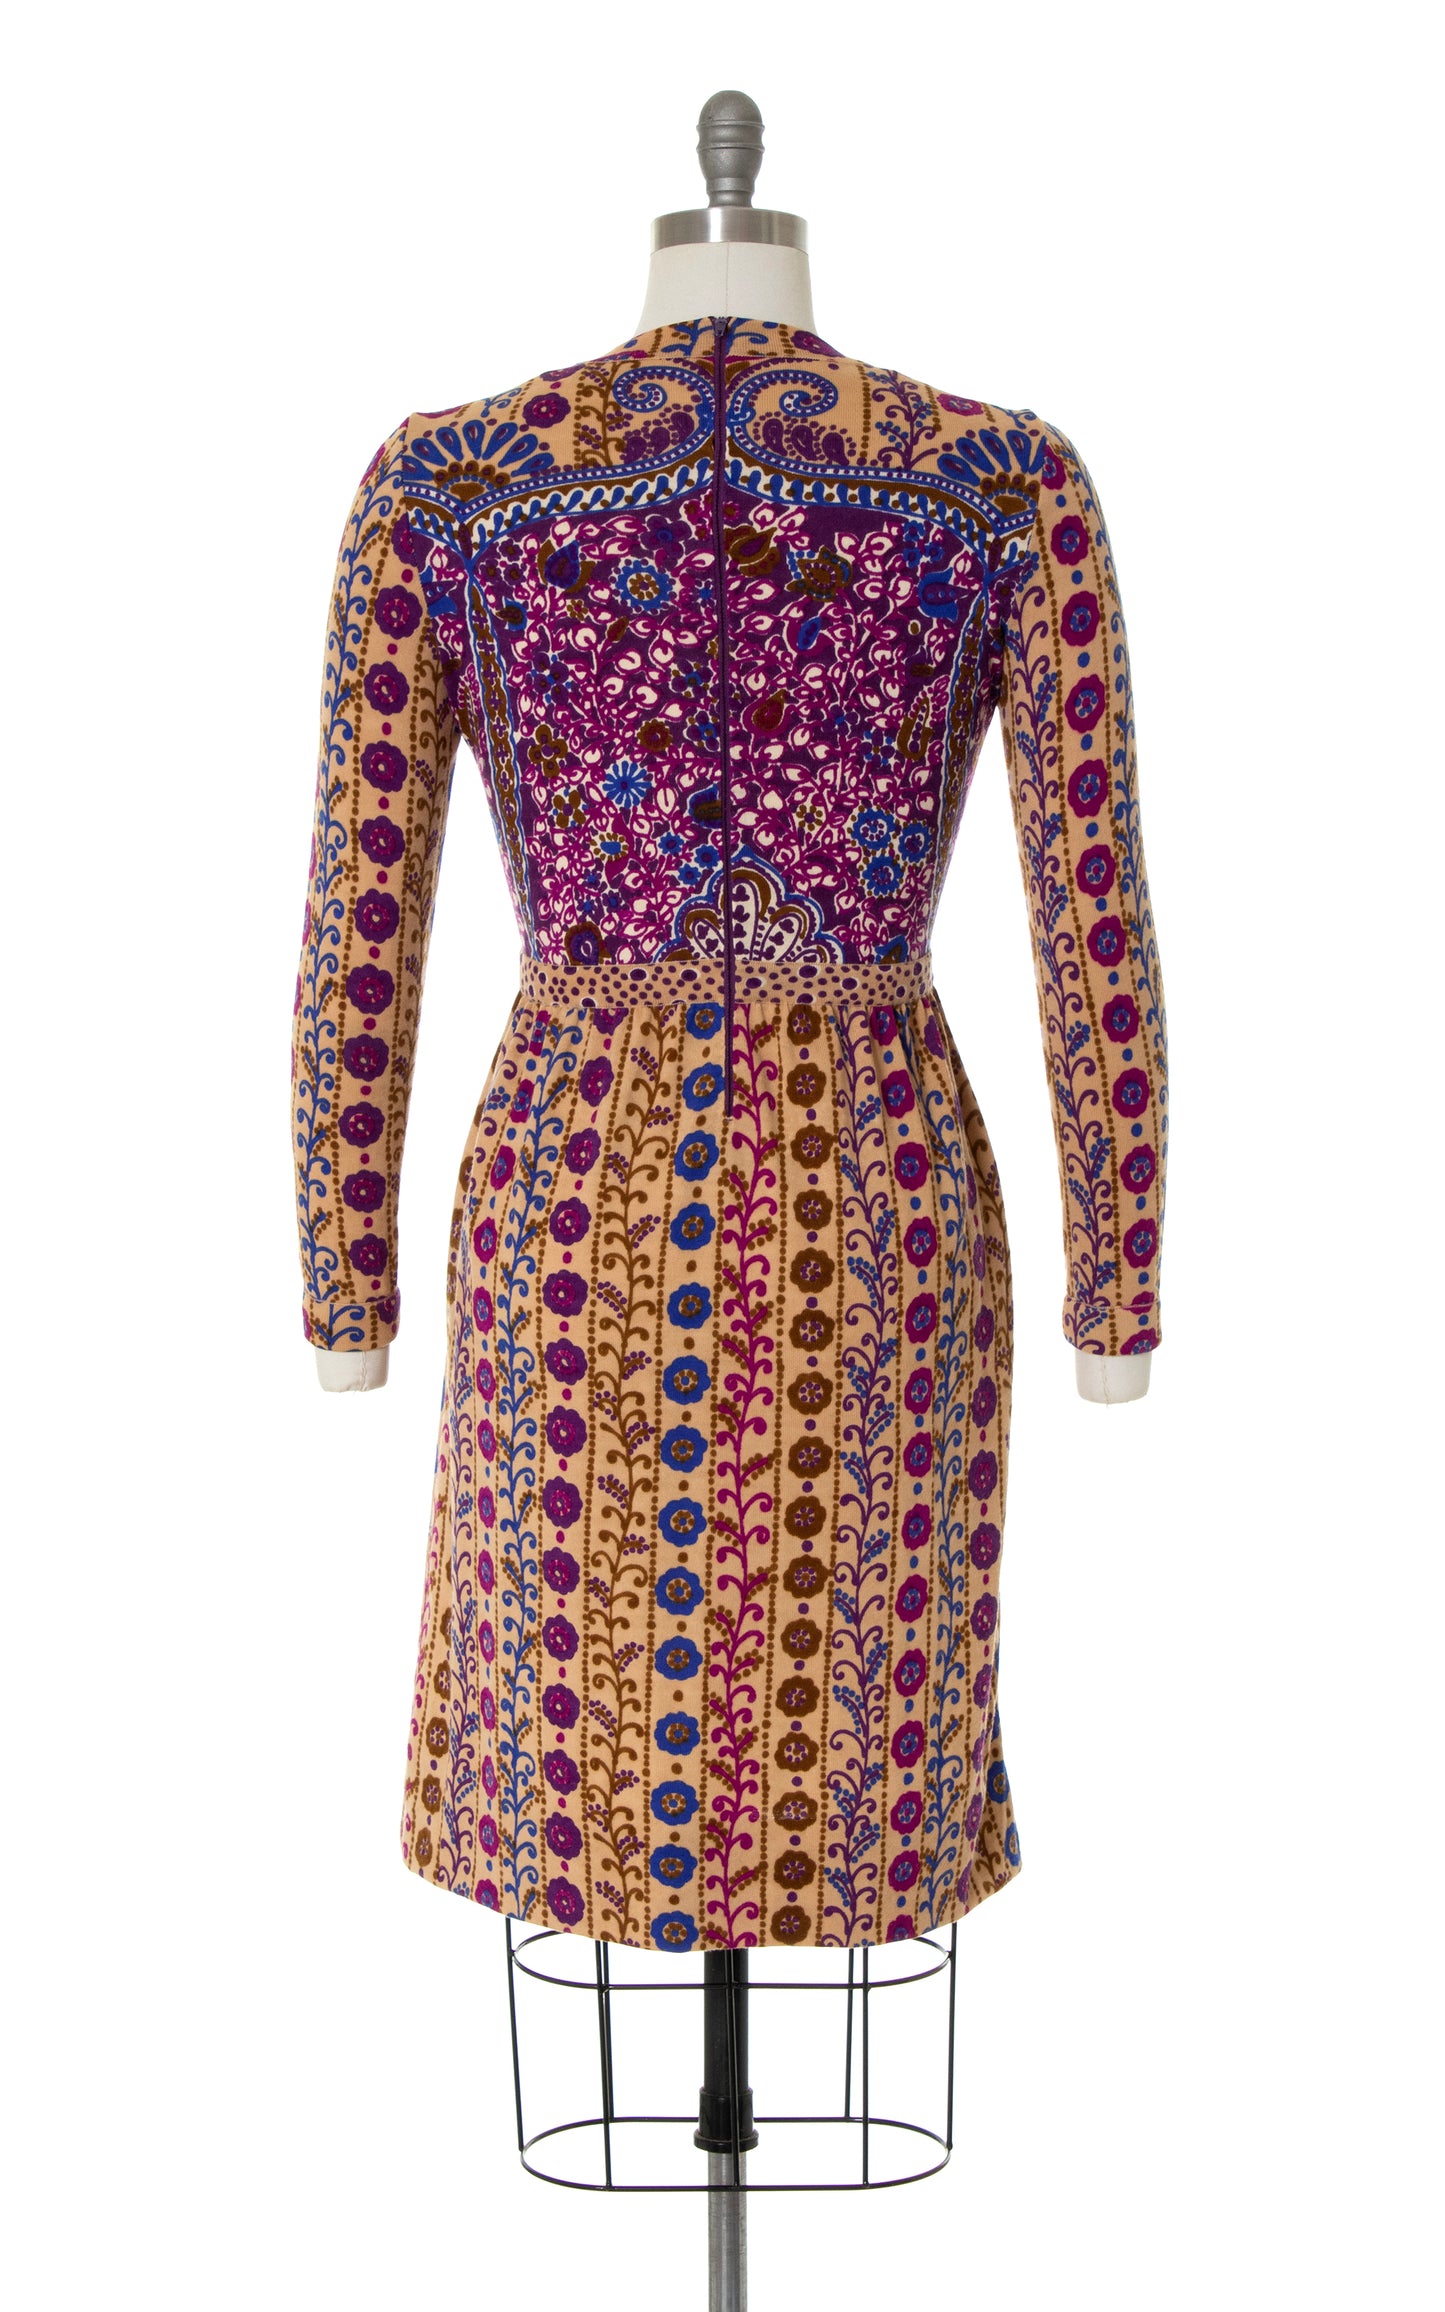 1960s GOLDWORM Knit Merino Wool Dress | small/medium